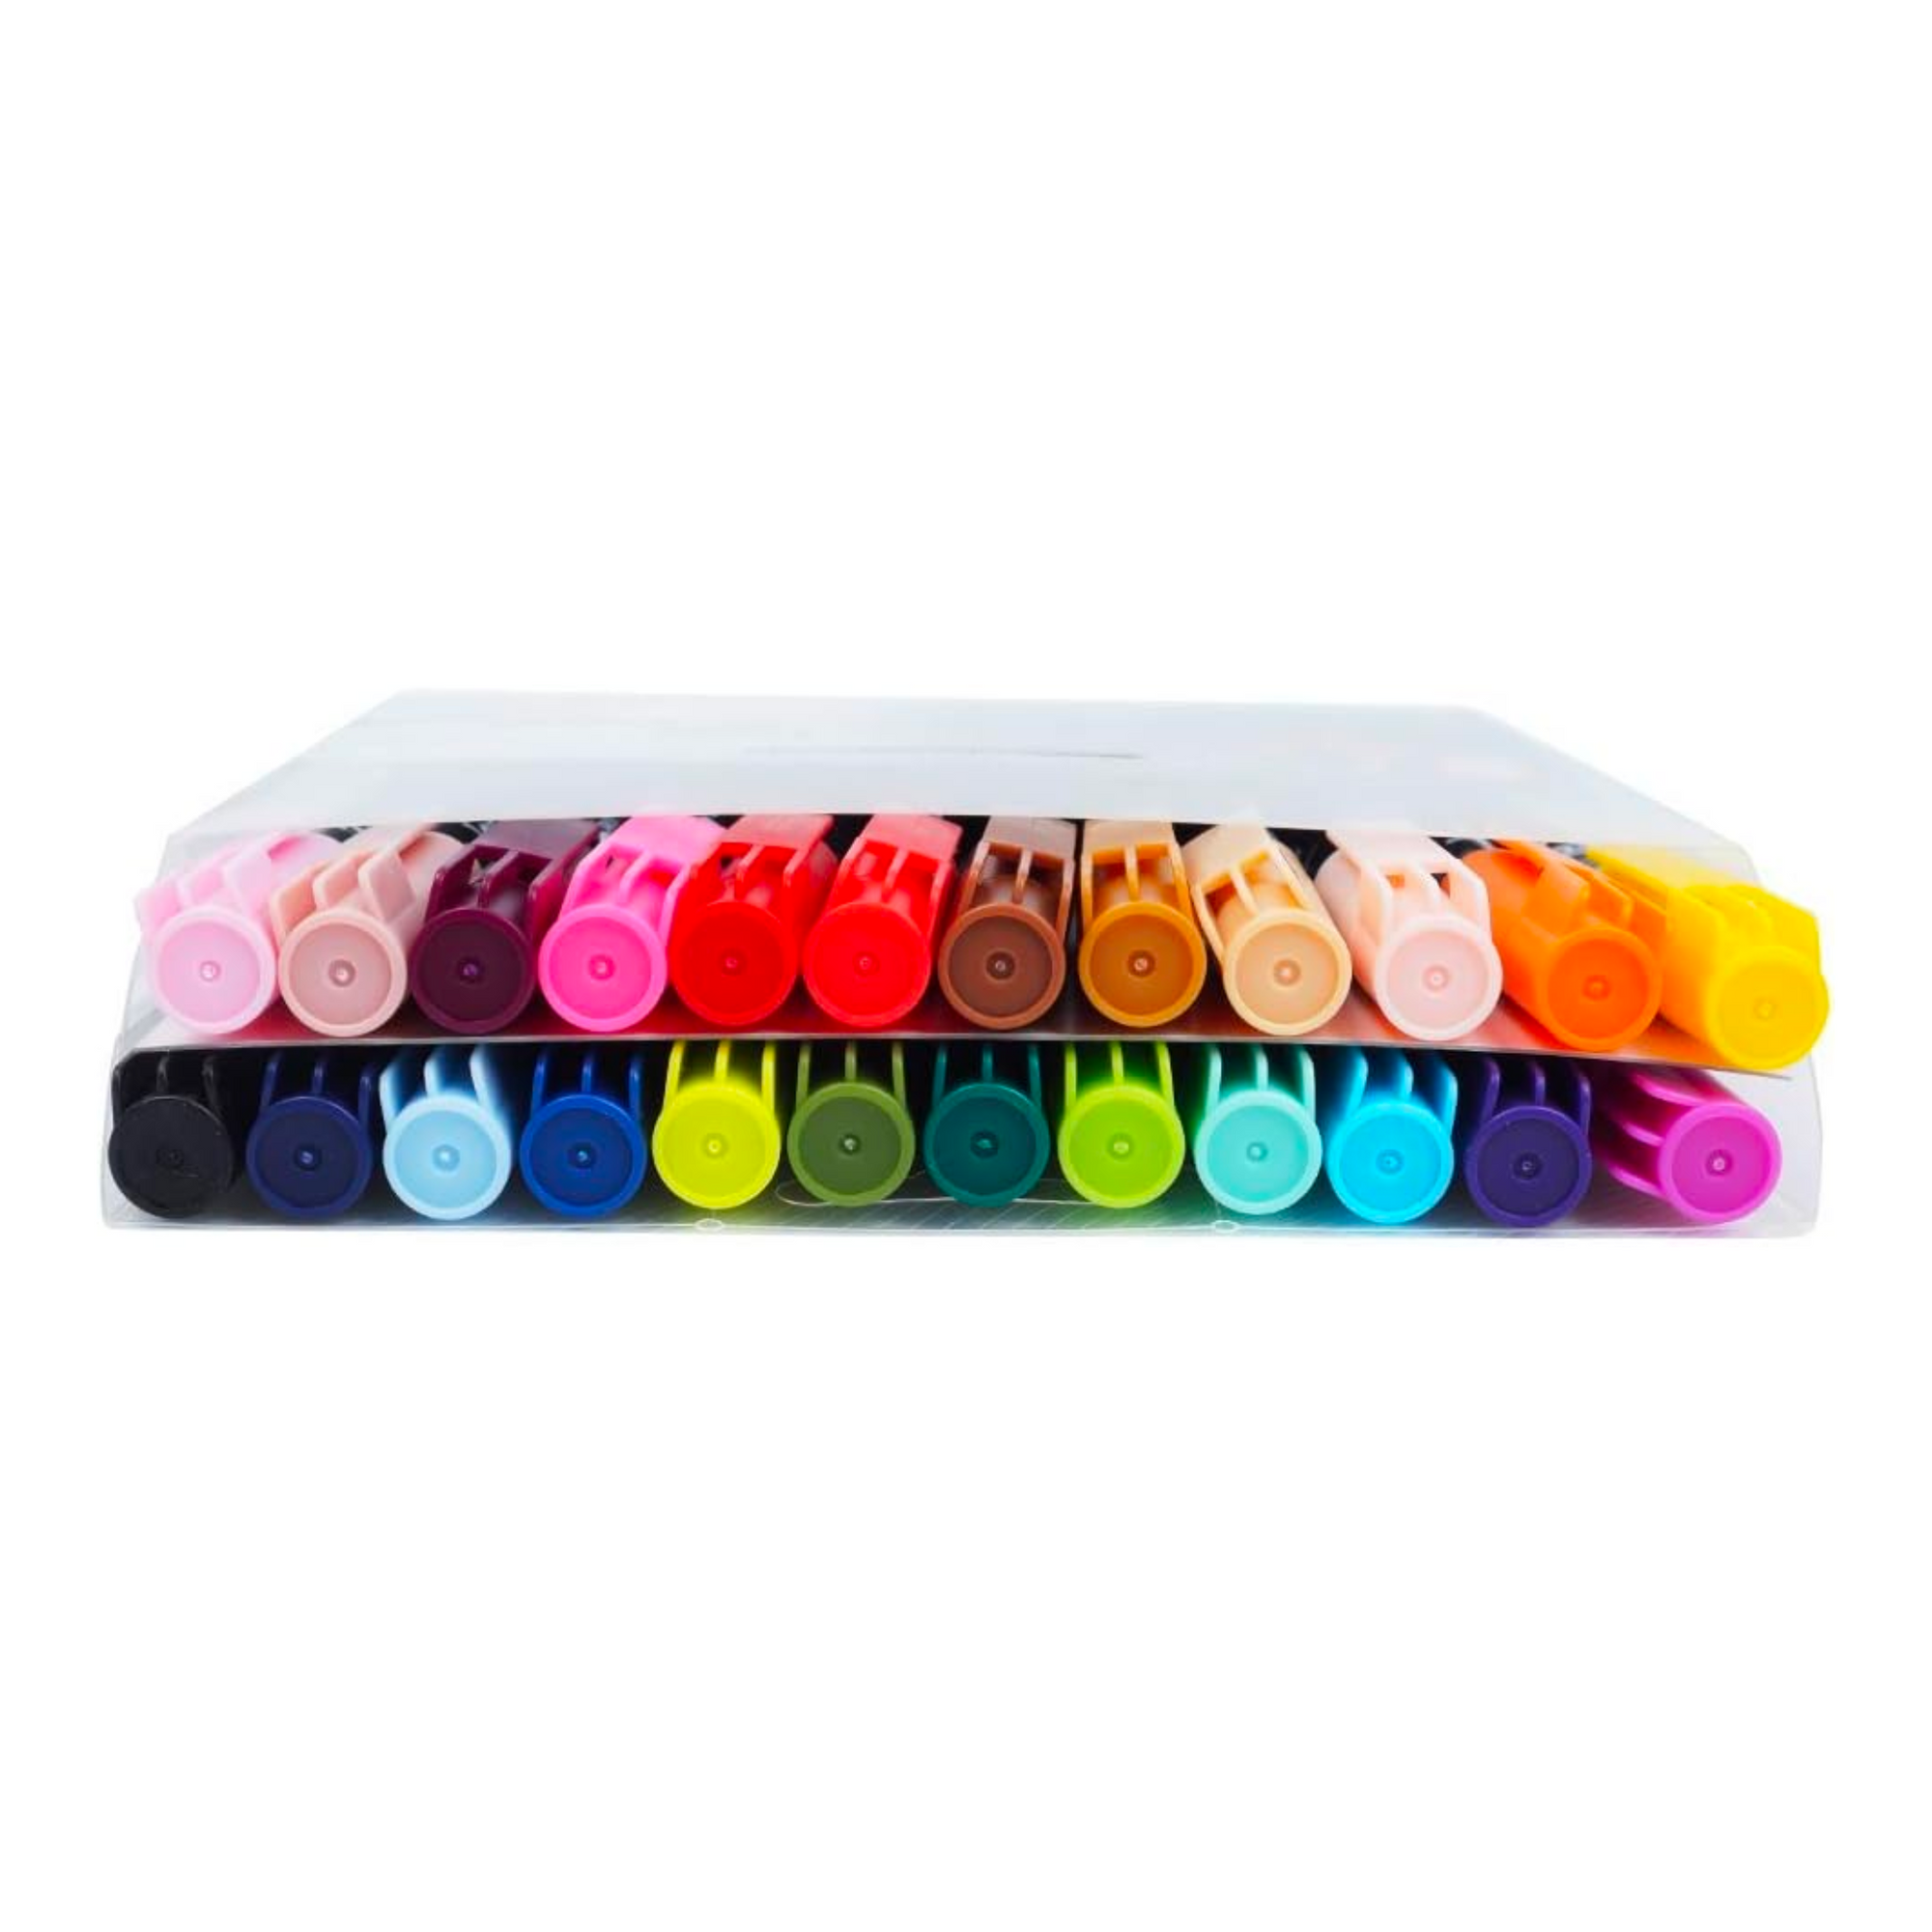 Sakura Koi Coloring Brush Pen Marker 24-Piece Set